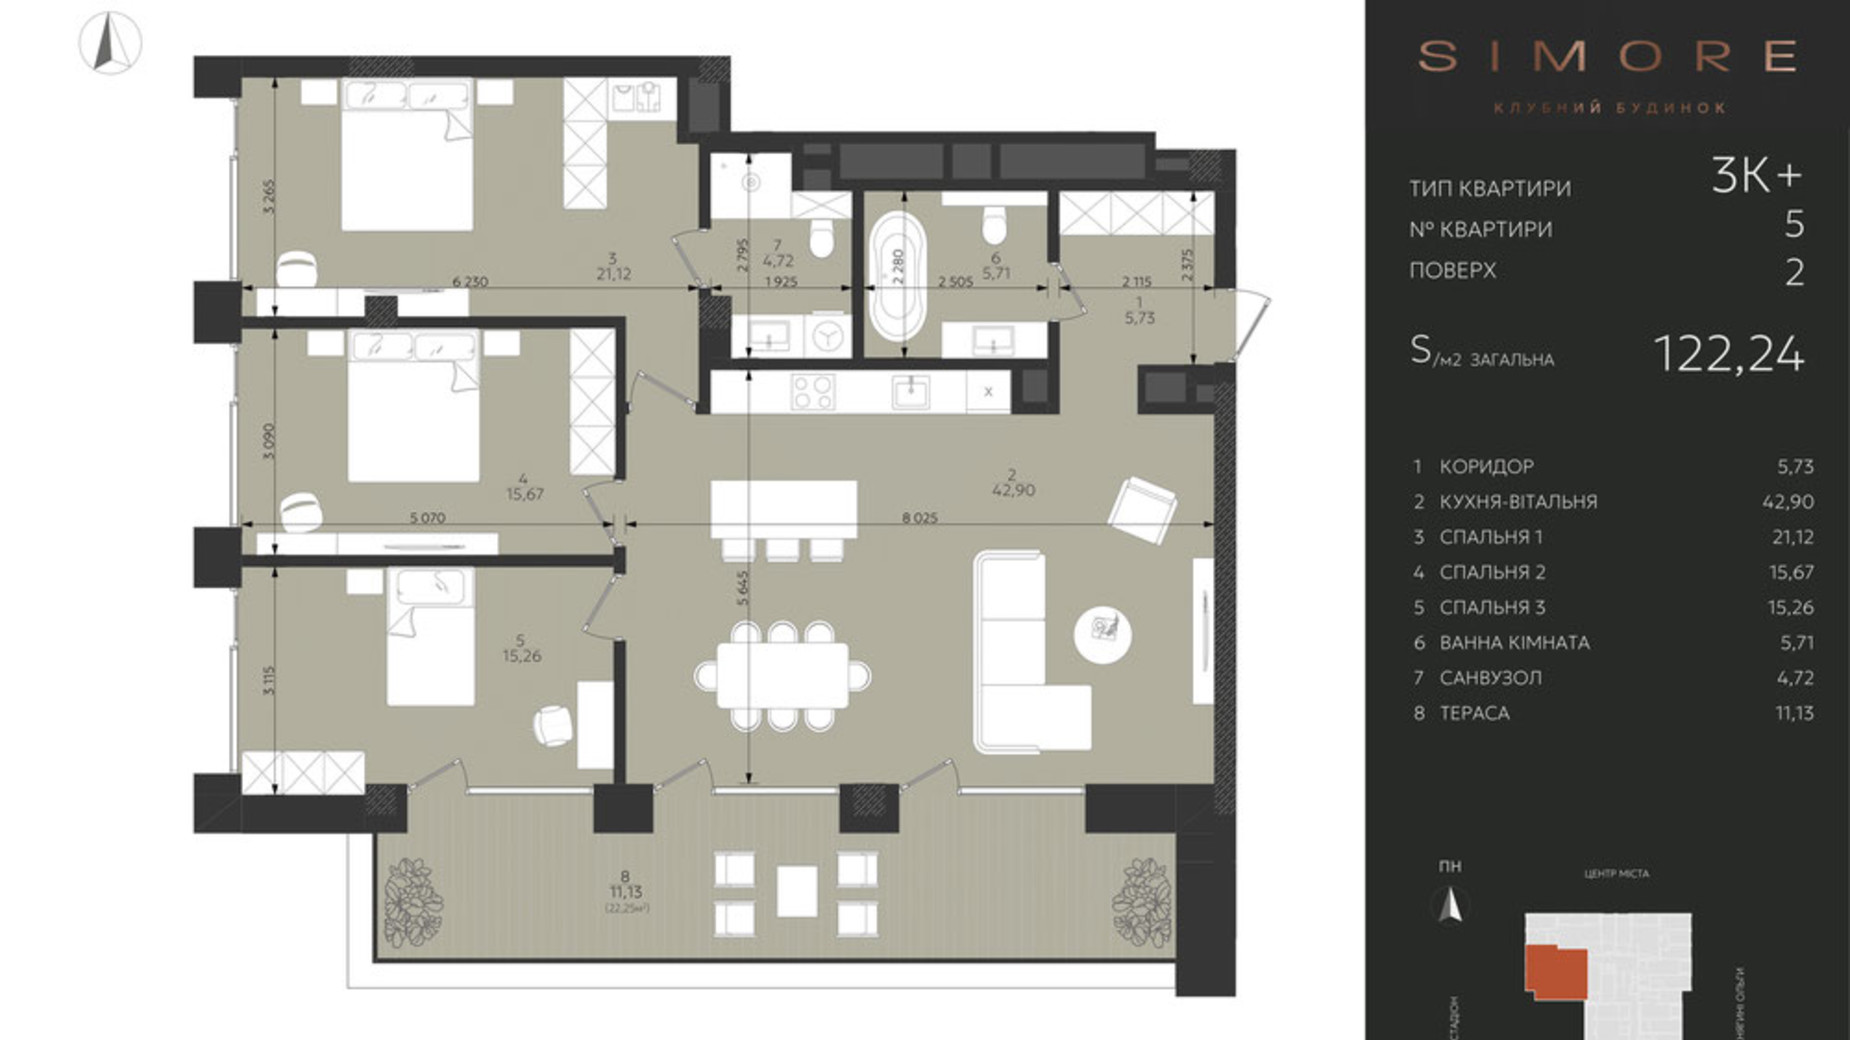 Планування 3-кімнатної квартири в Клубний будинок Simore 122.24 м², фото 694194